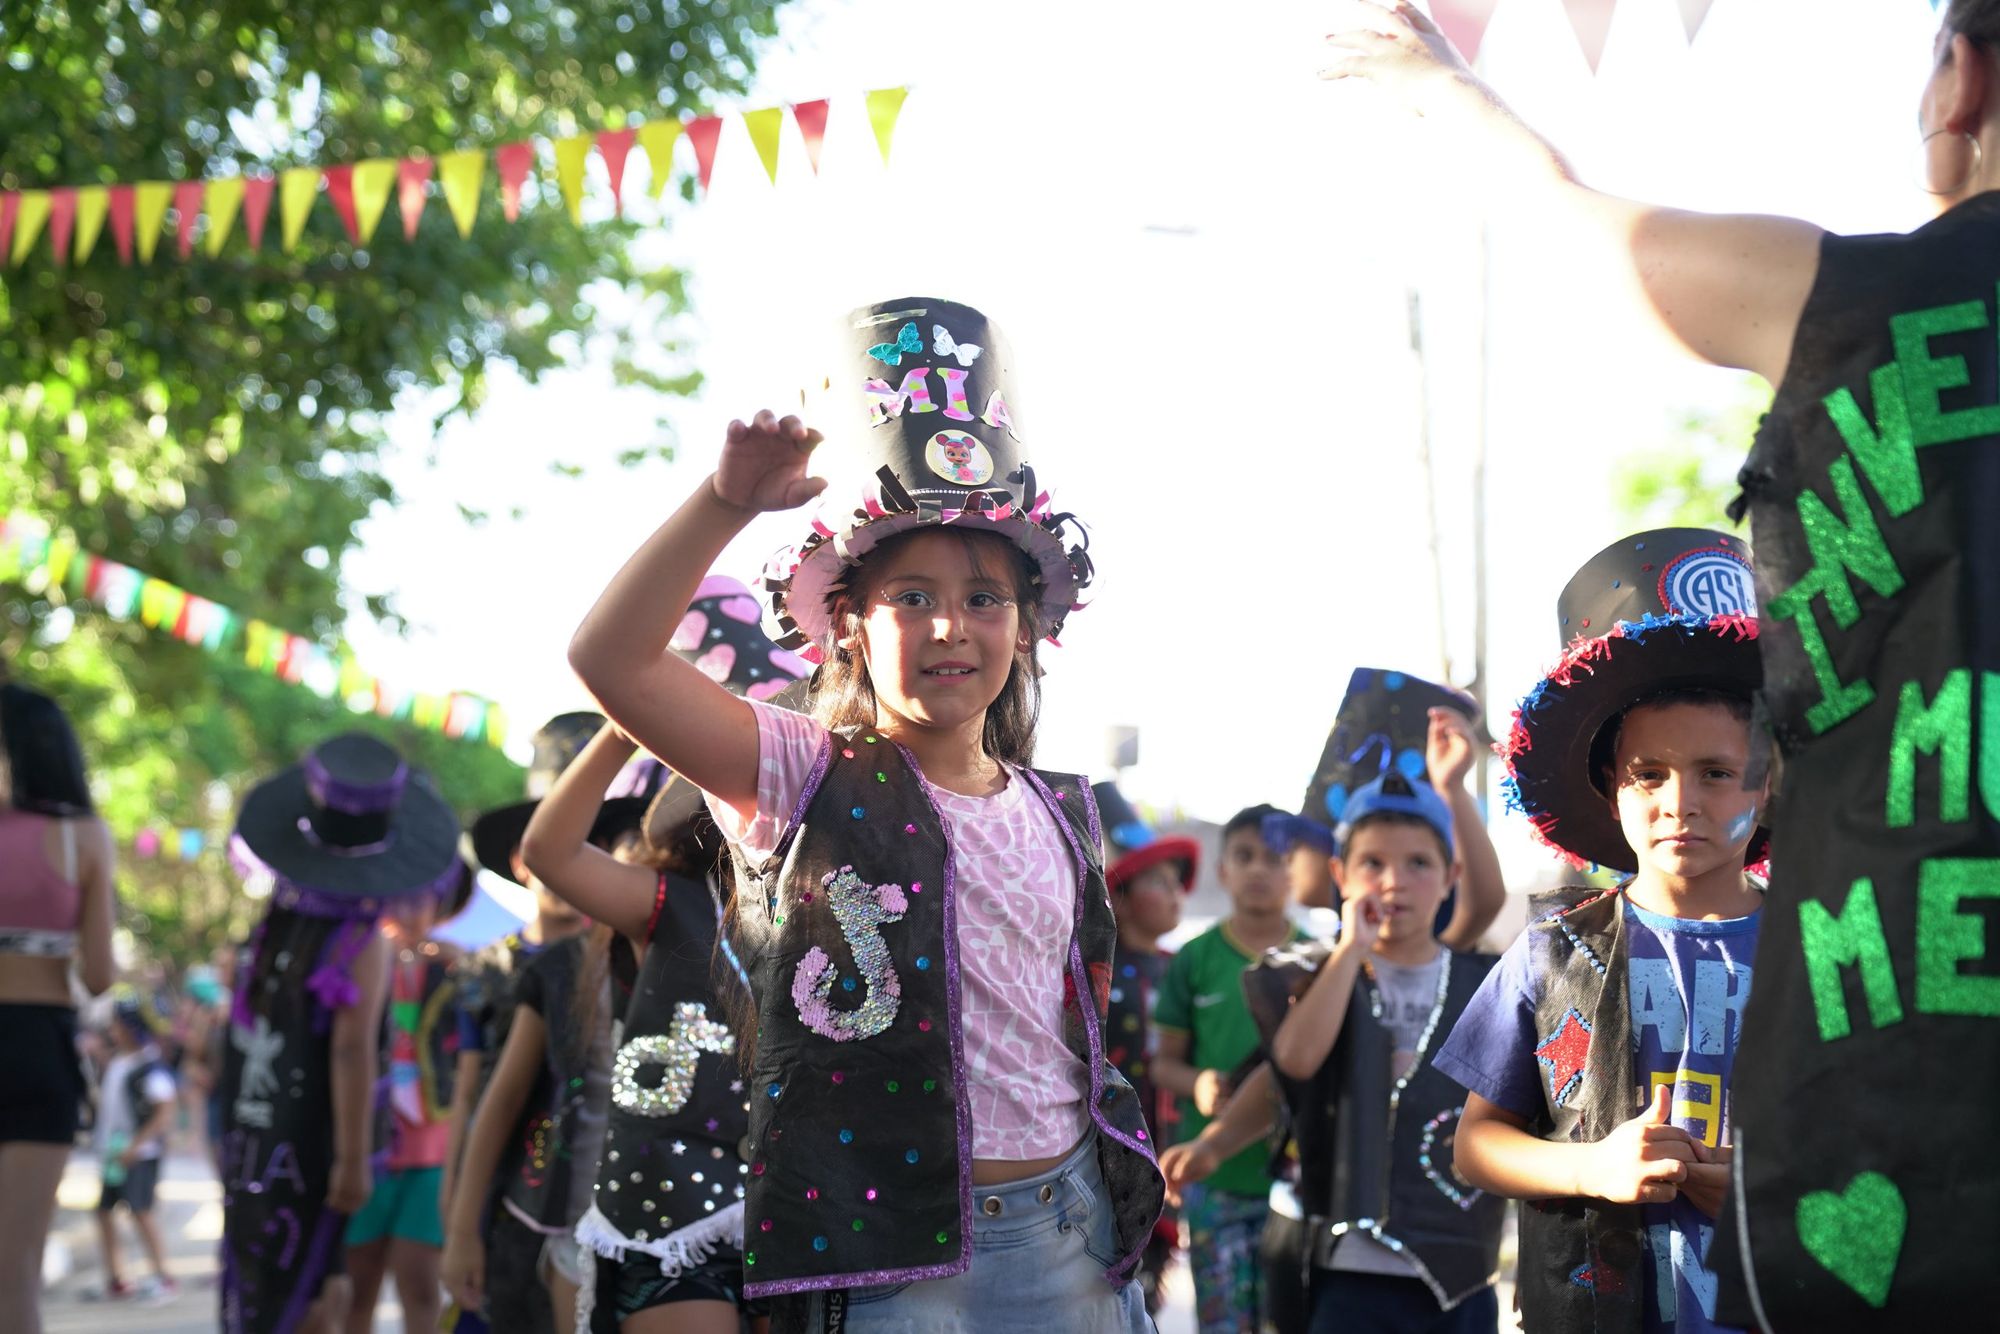 Este sábado se presenta "Pedacitos de Carnaval" en la Plaza Parque Alvear